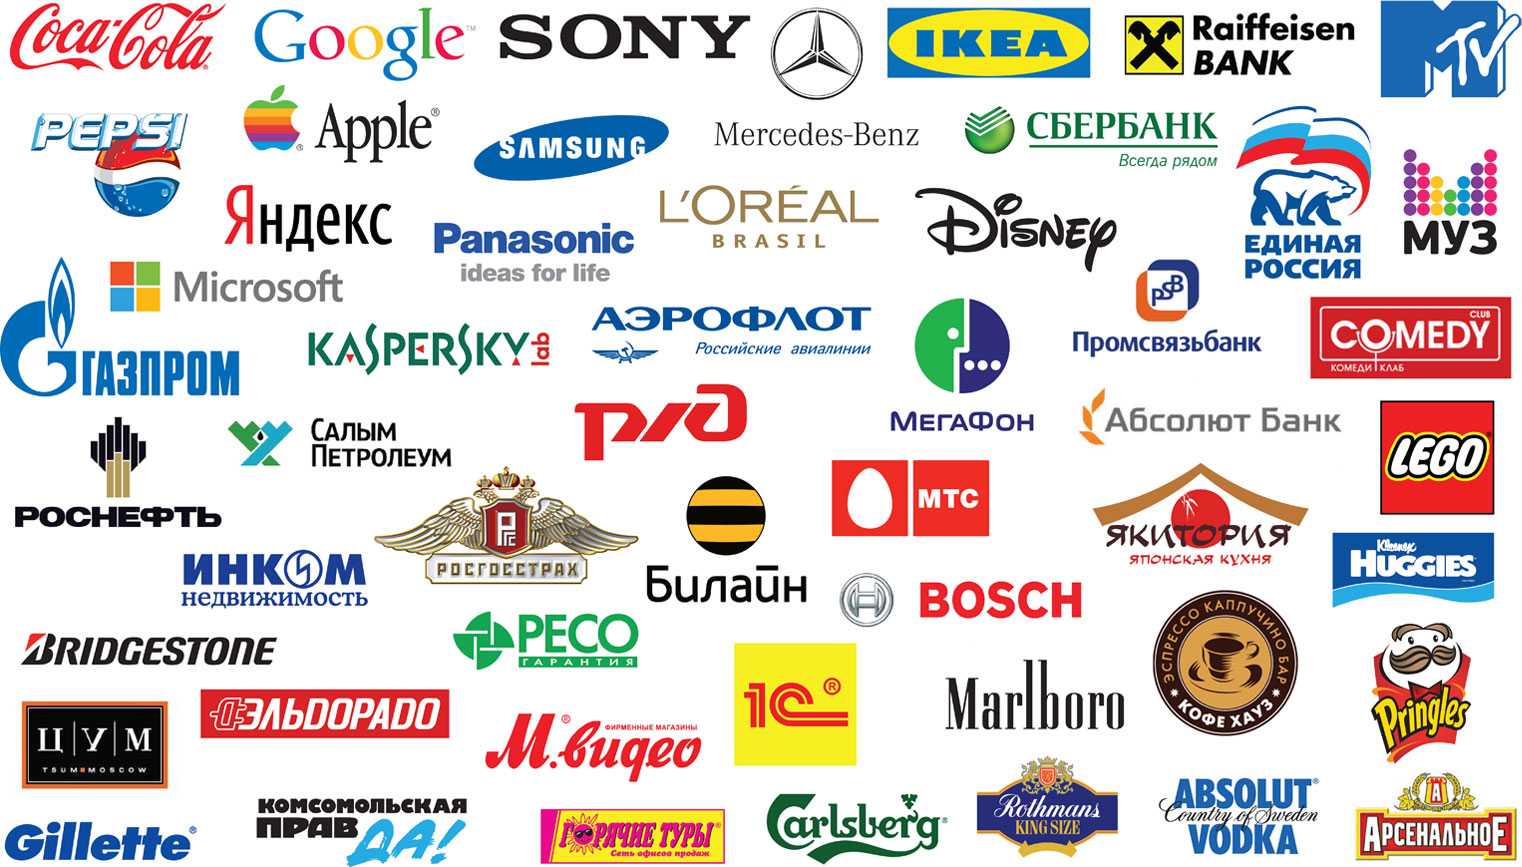 Какие косметические компании существуют вообще в россии? ну продолжите список: 1. avon 2. орифлейм а дальше???